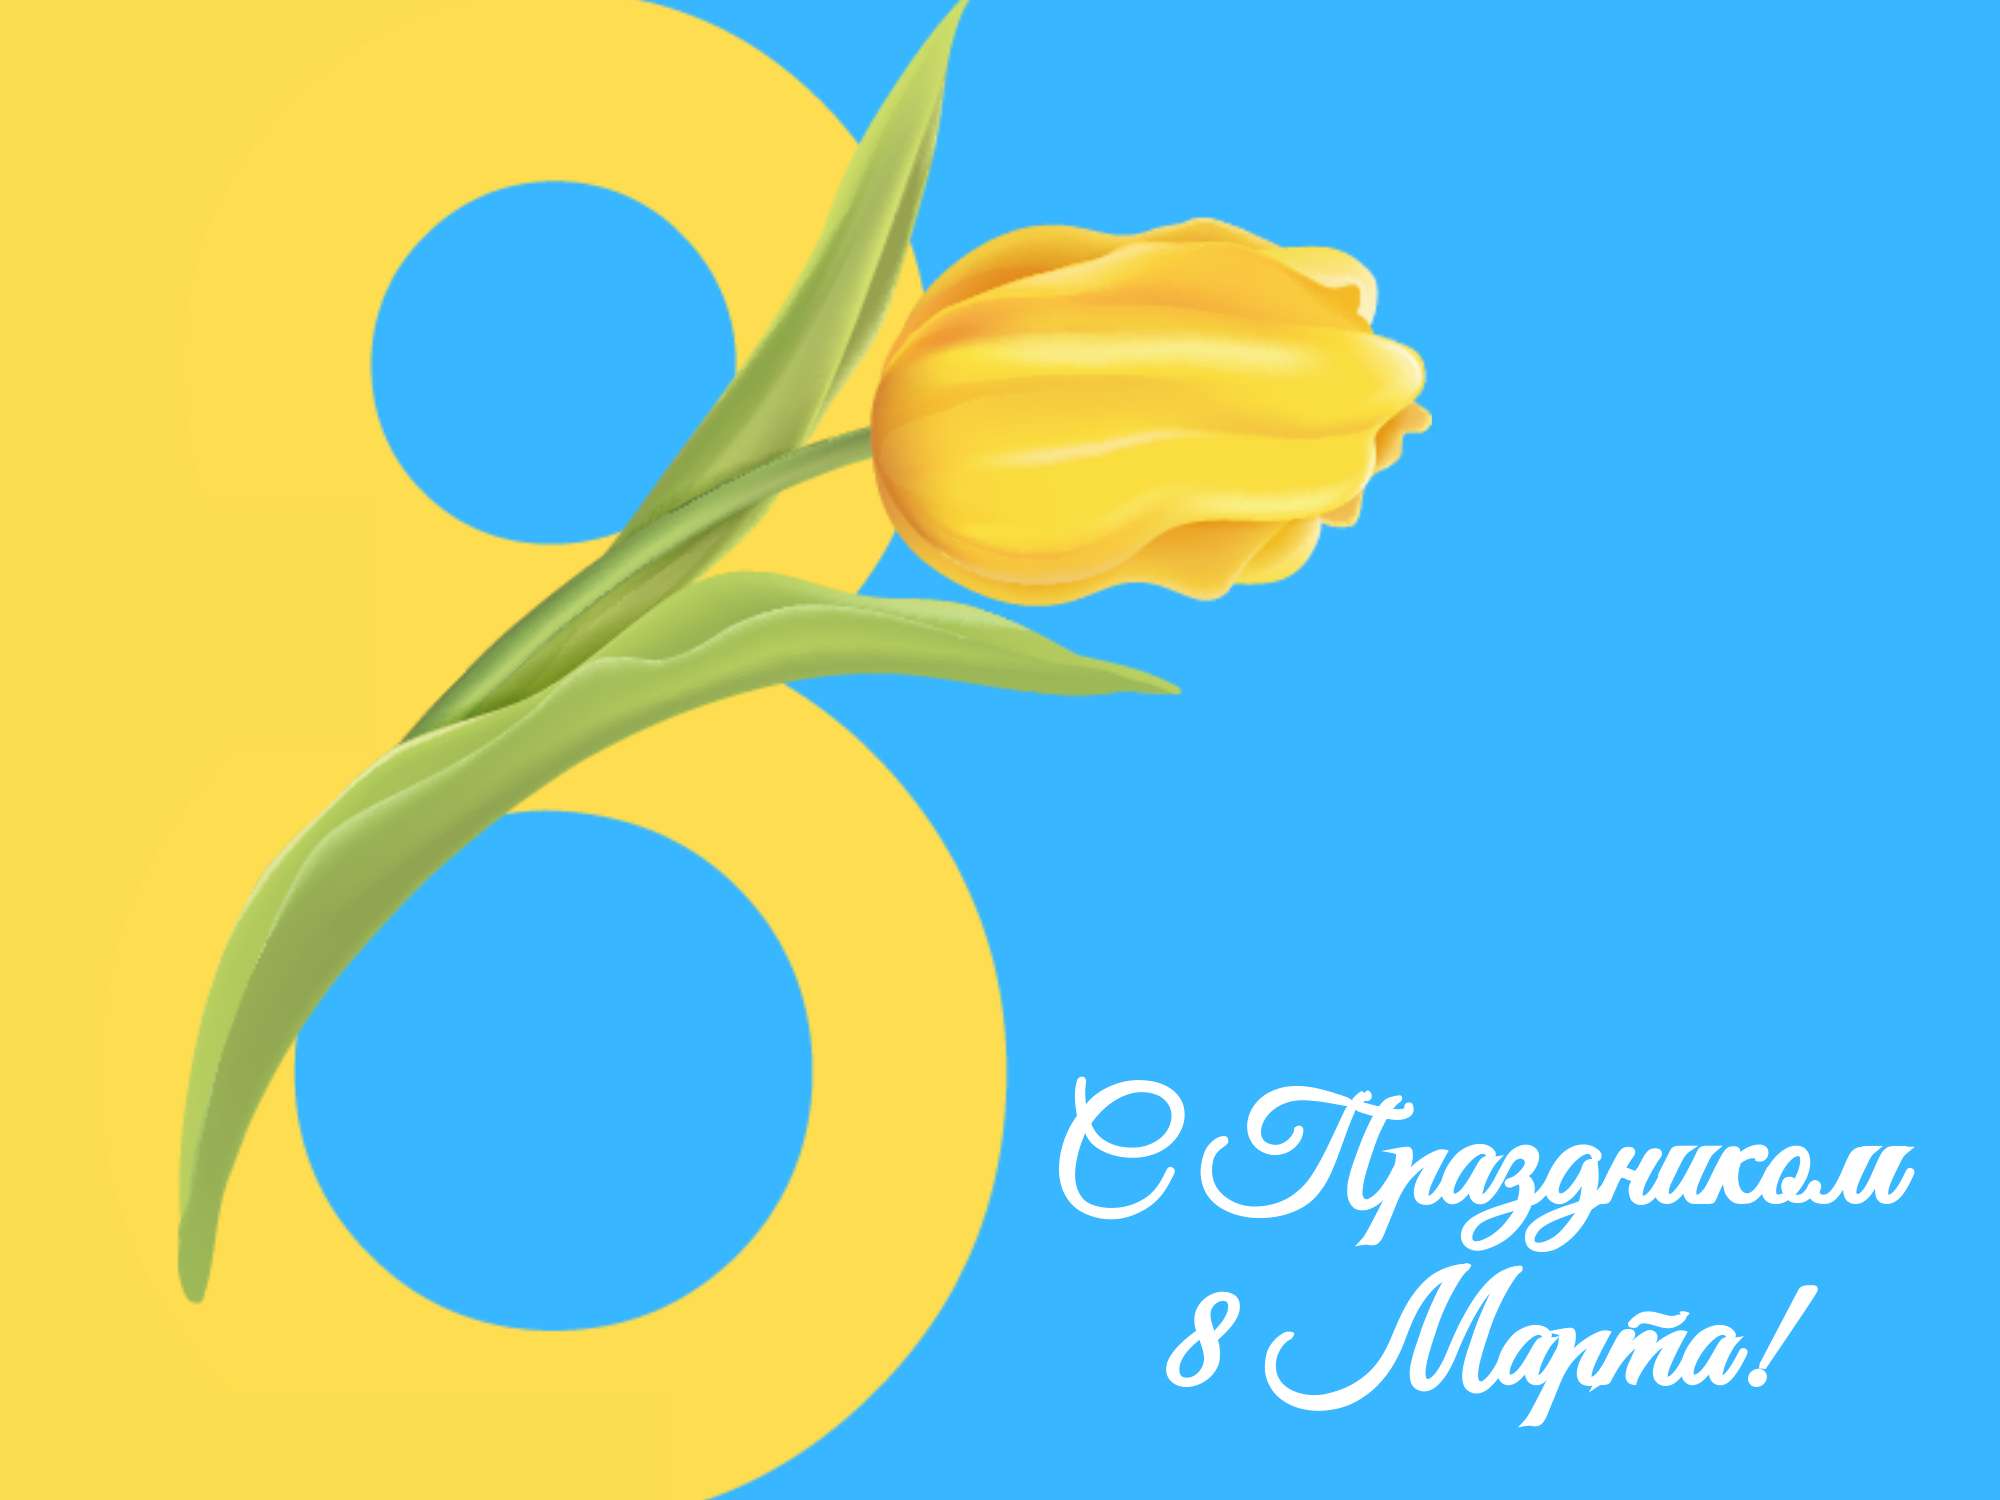 Яркая желто-голубая открытка в день восьмого марта с тюльпаном и цифрой 8